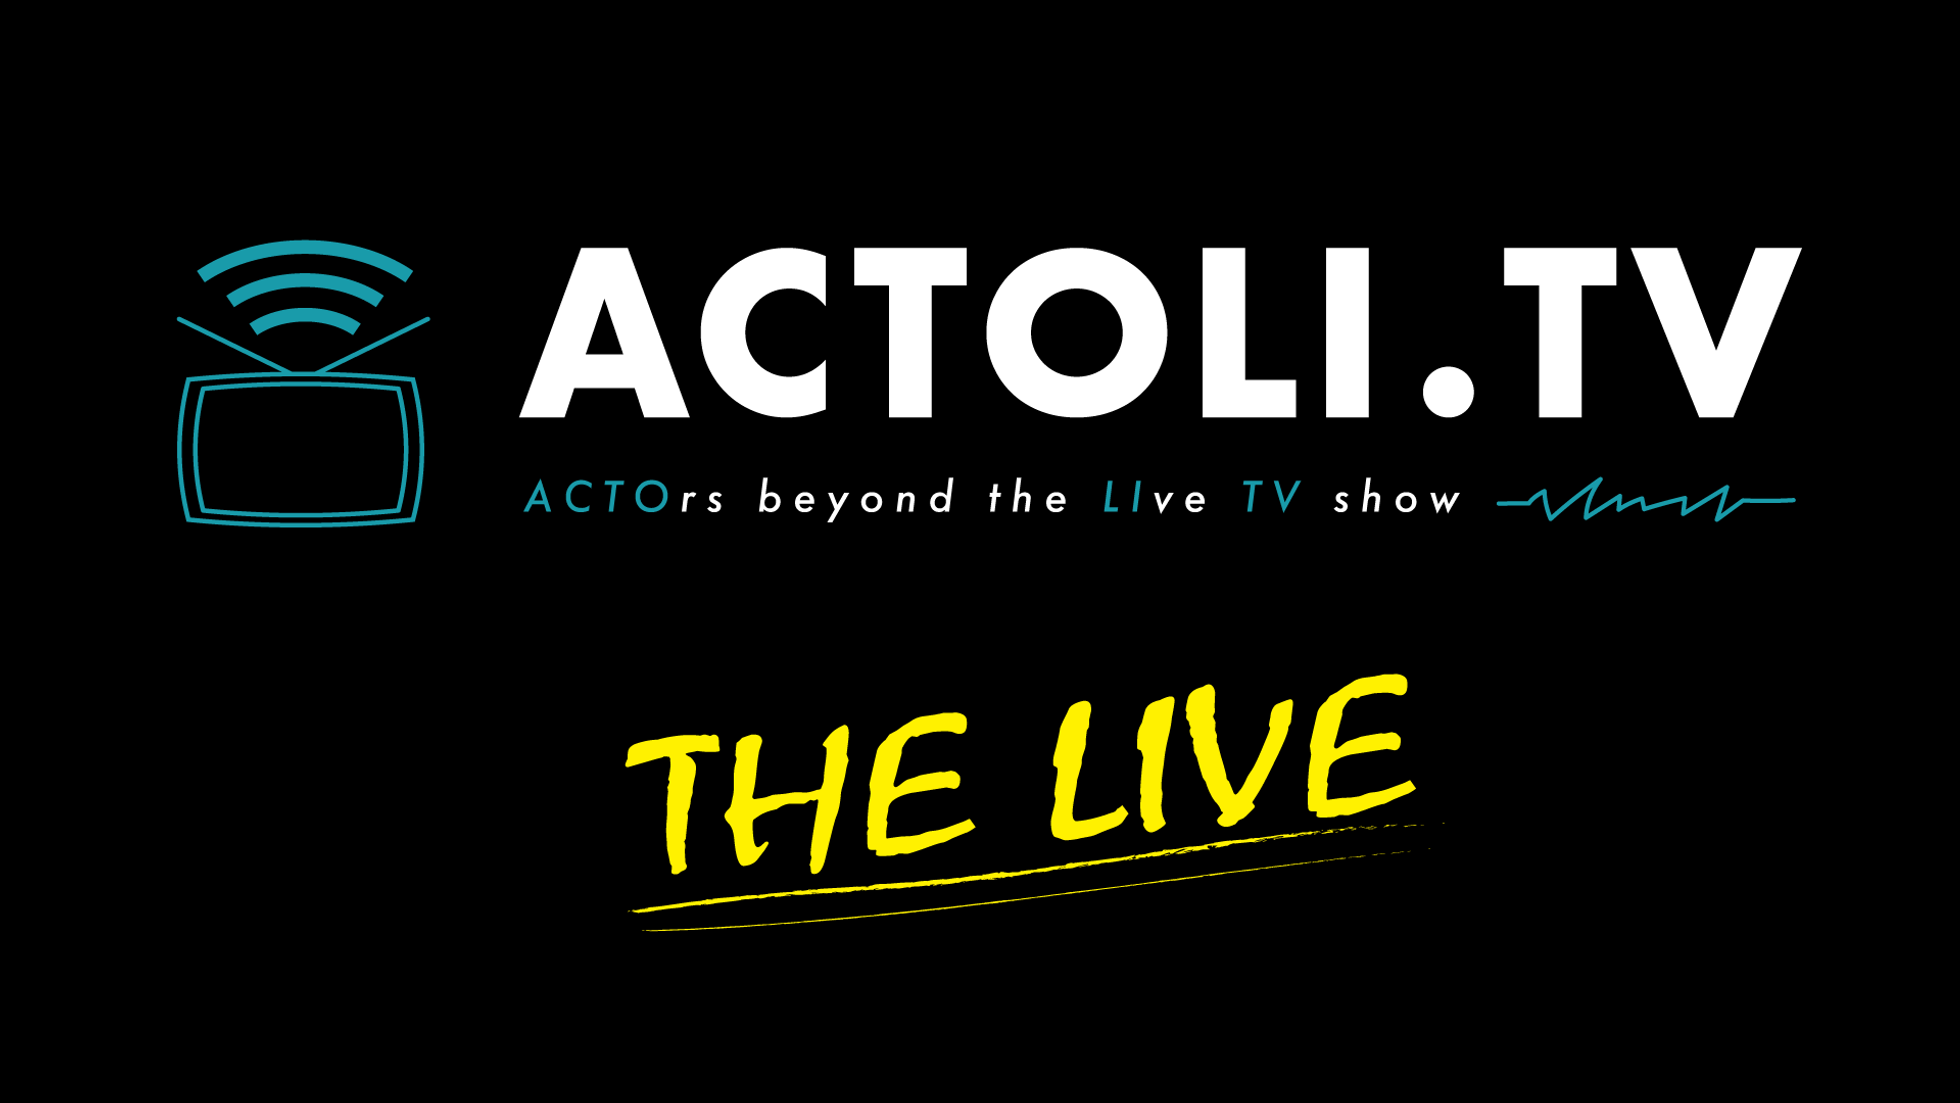 ACTOLI.TV THE LIVE